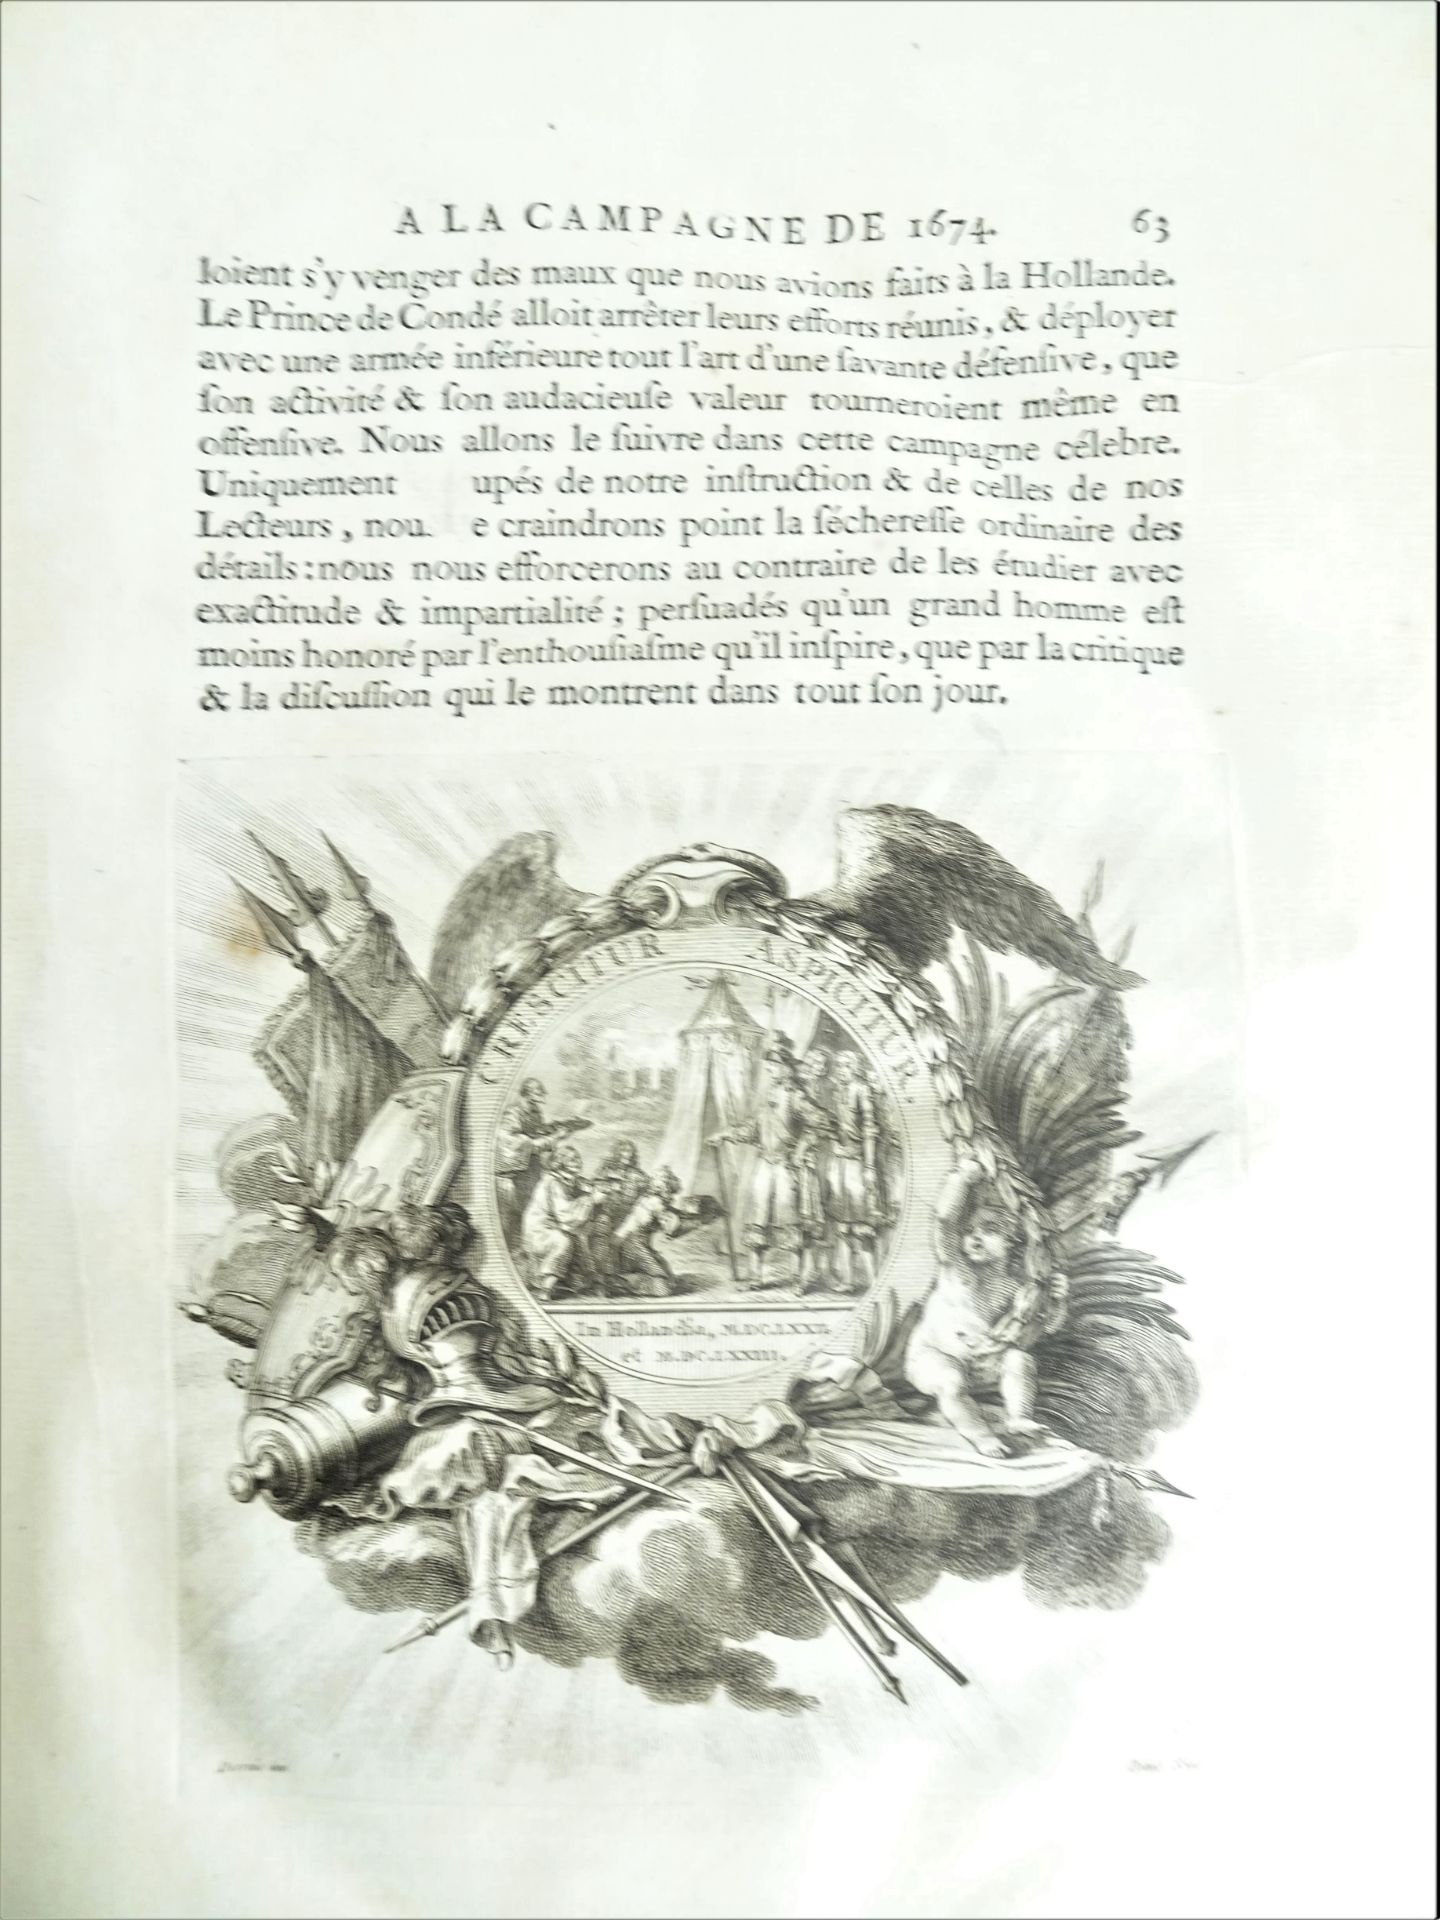 |Histoire Militaire| Chevalier de Beaurain, Histoire de la Campagne de 1674 en Flandre précédé d' - Image 6 of 19